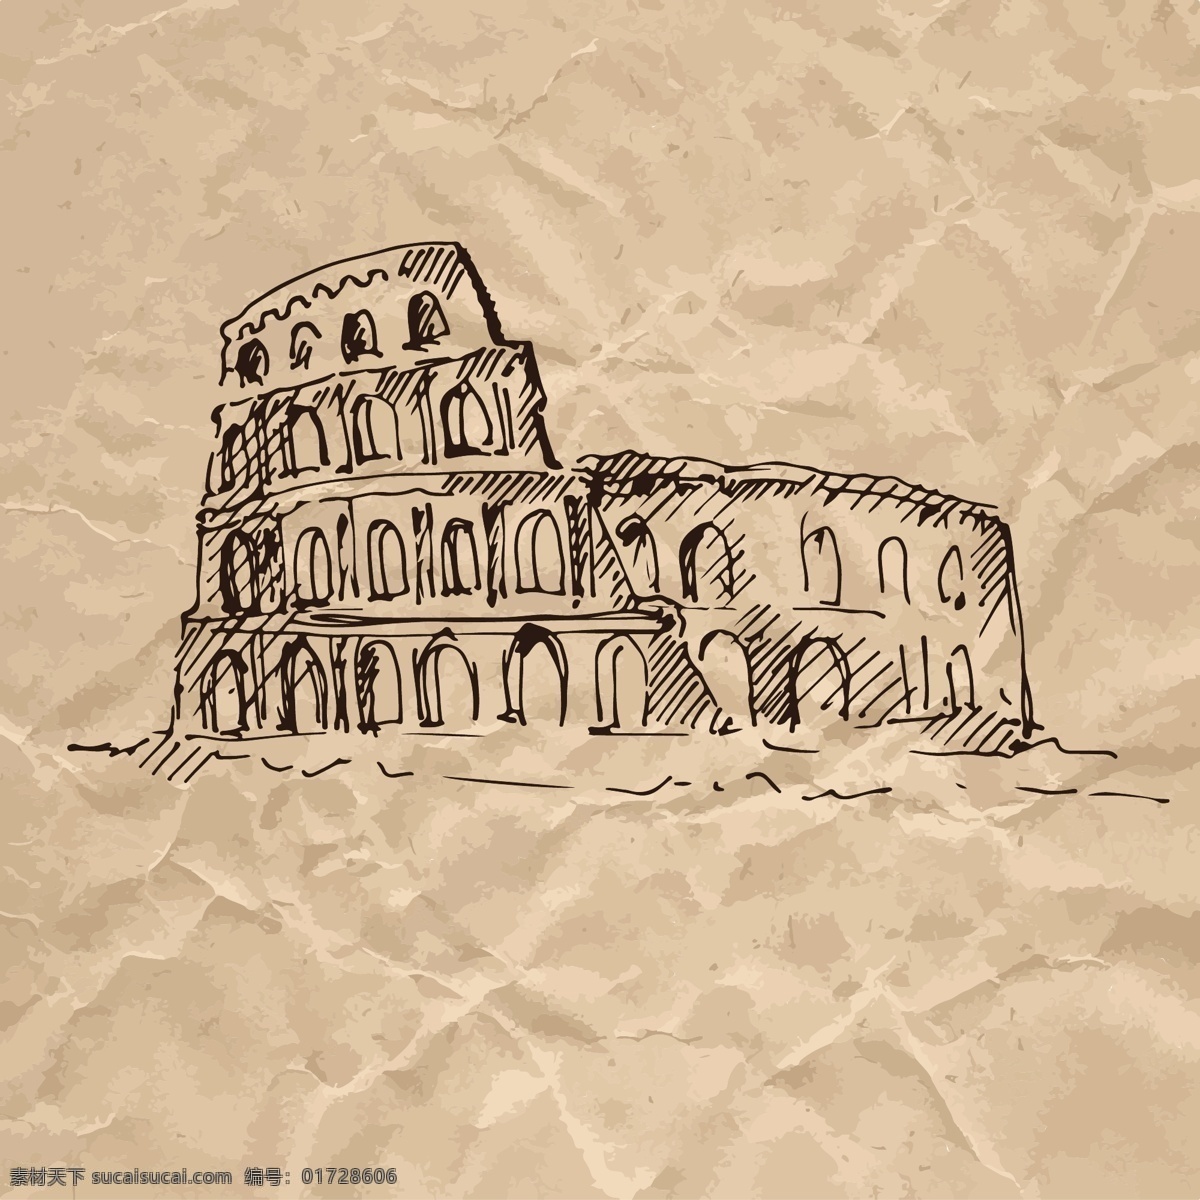 罗马 竞技场 褶皱 纸张 手绘 速写 欧洲 建筑 矢量 著名建筑 欧式 素描 广告 背景